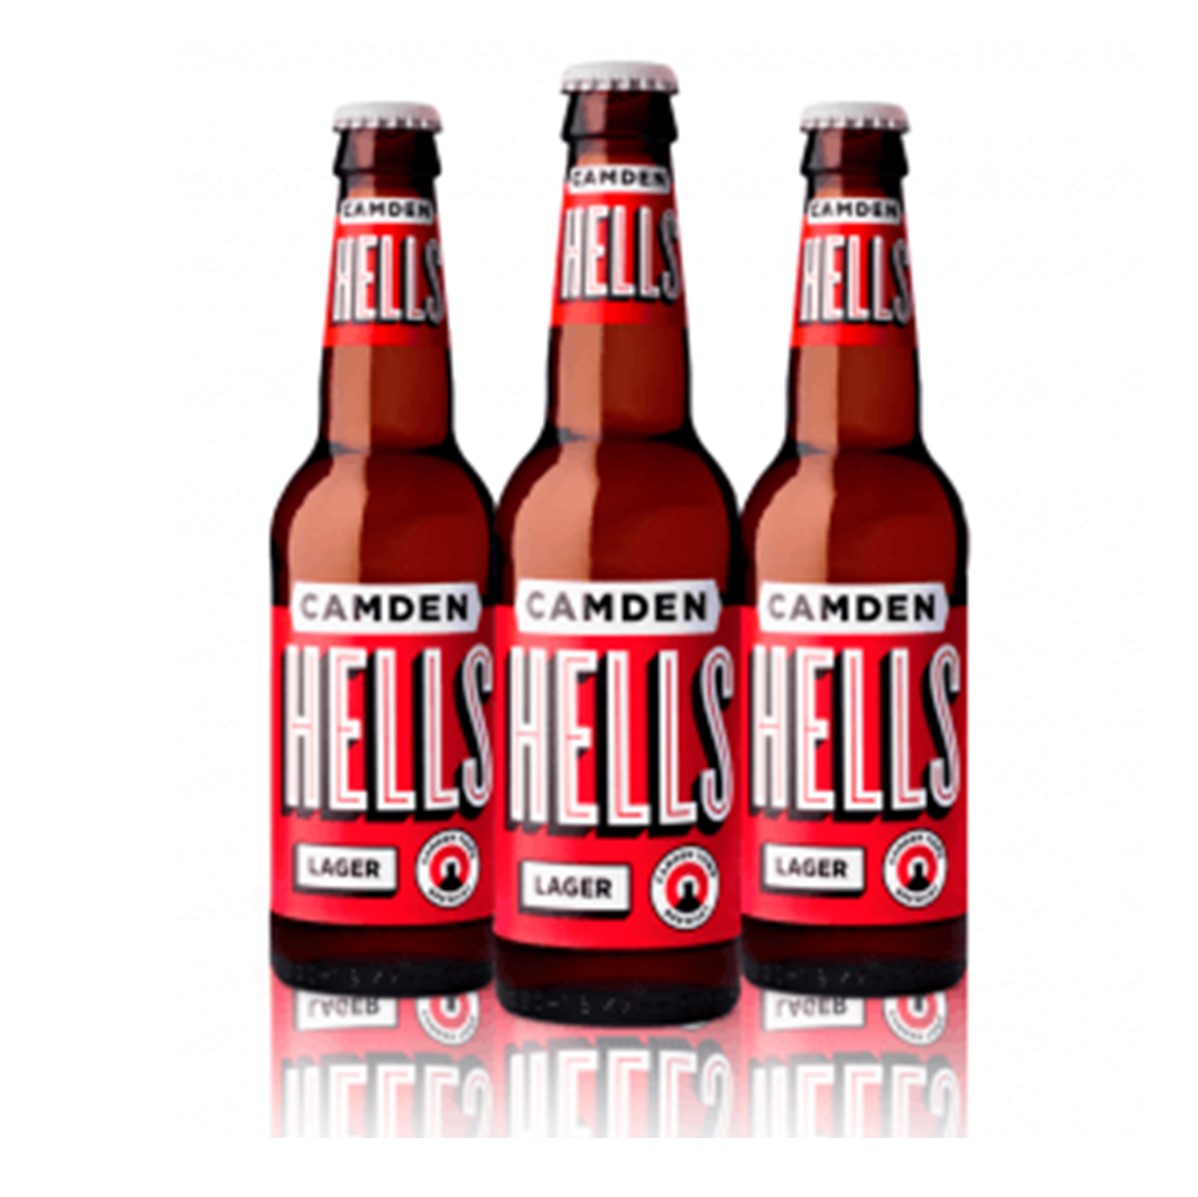 Camden Hells Lager - 24x330ml bottles